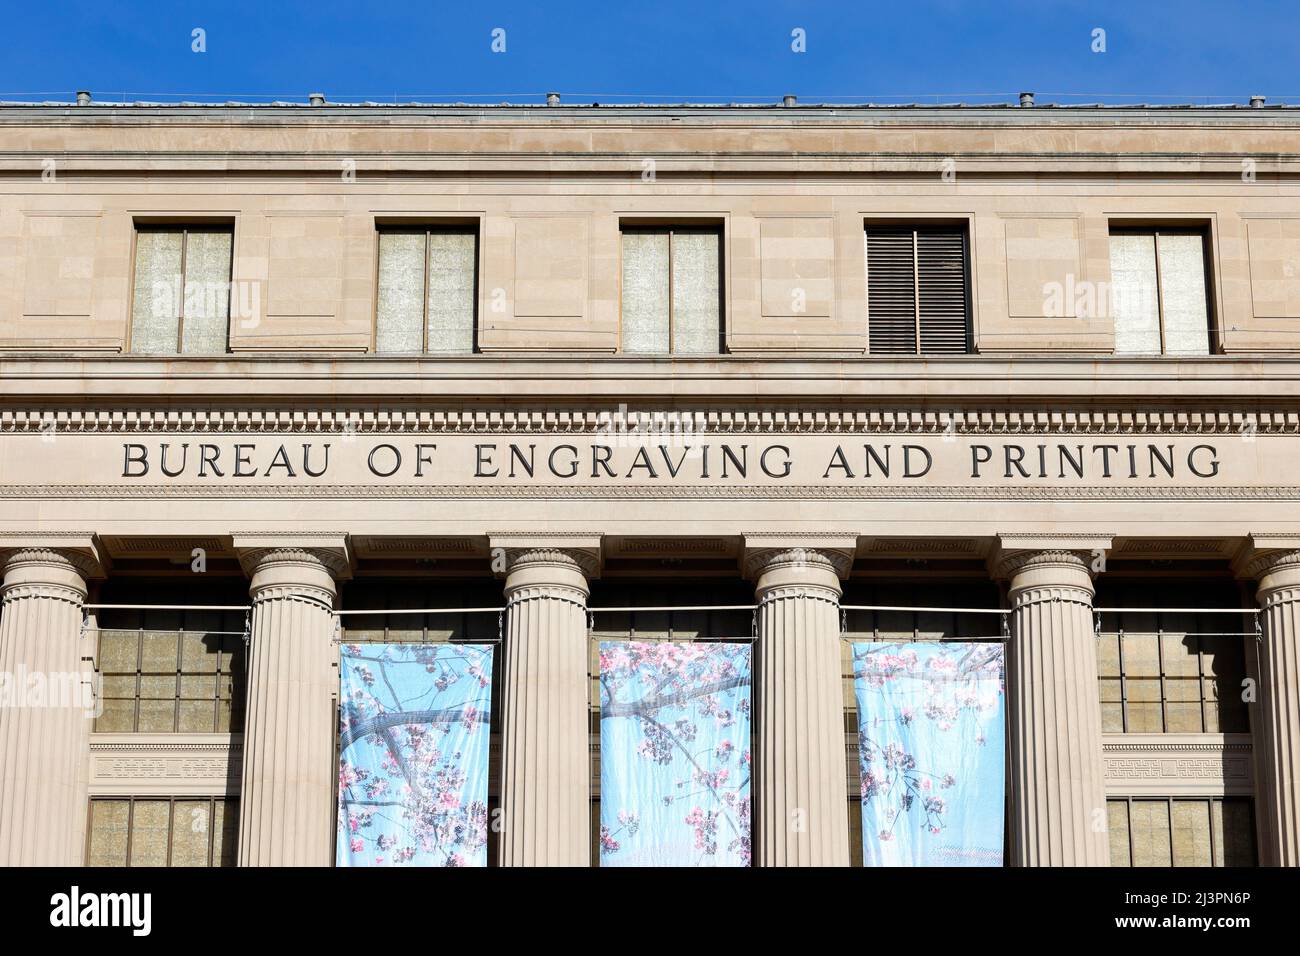 Bureau de gravure et d'impression, Washington, DC. Extérieur d'une usine de monnaie et d'une banque centrale. Banque D'Images